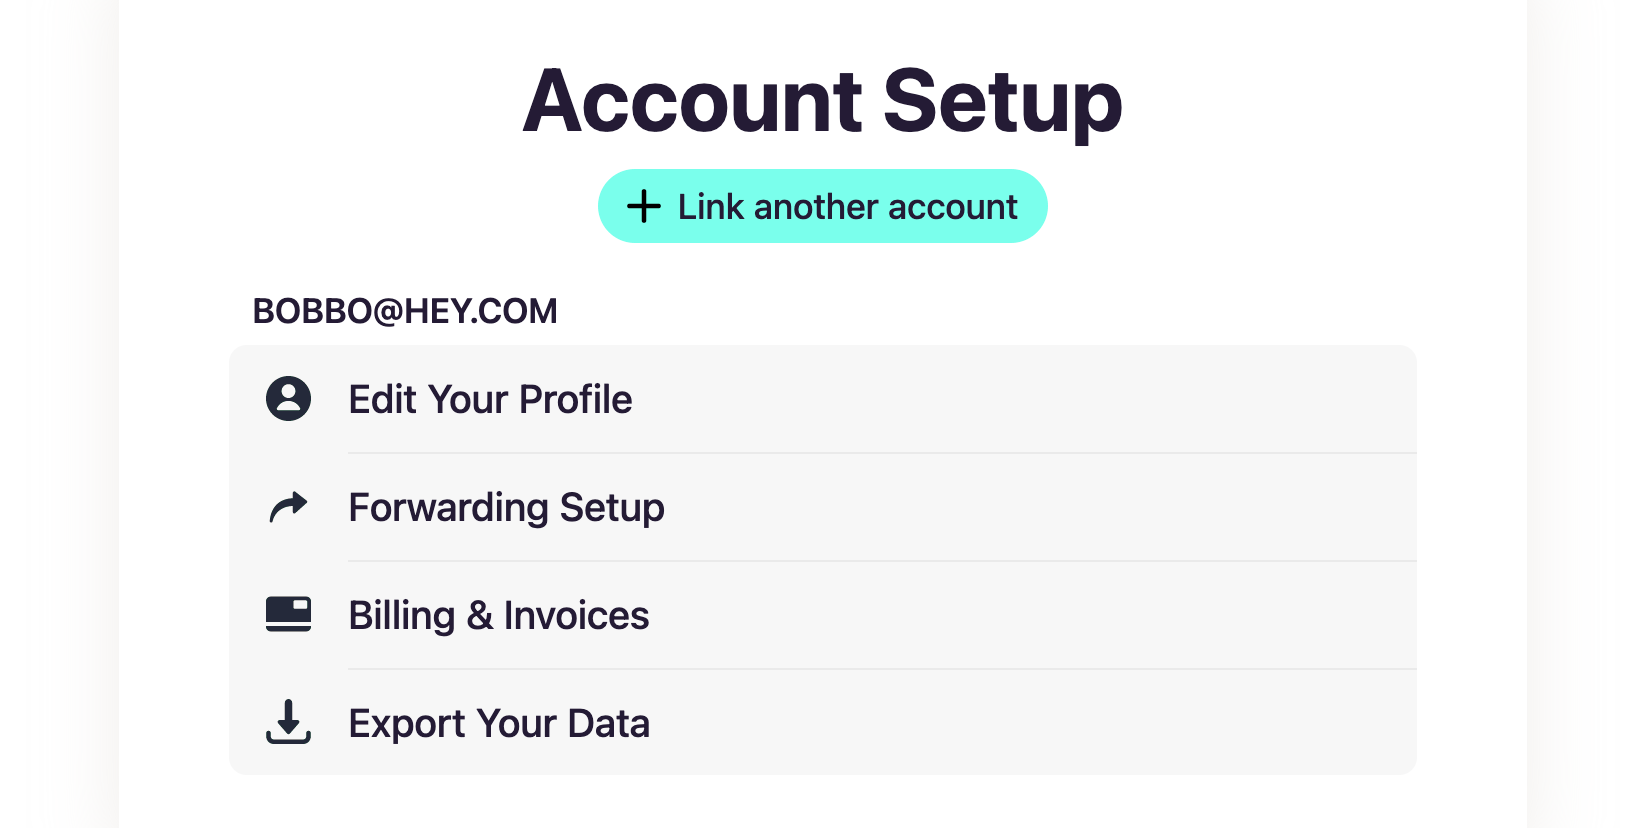 Account Setup